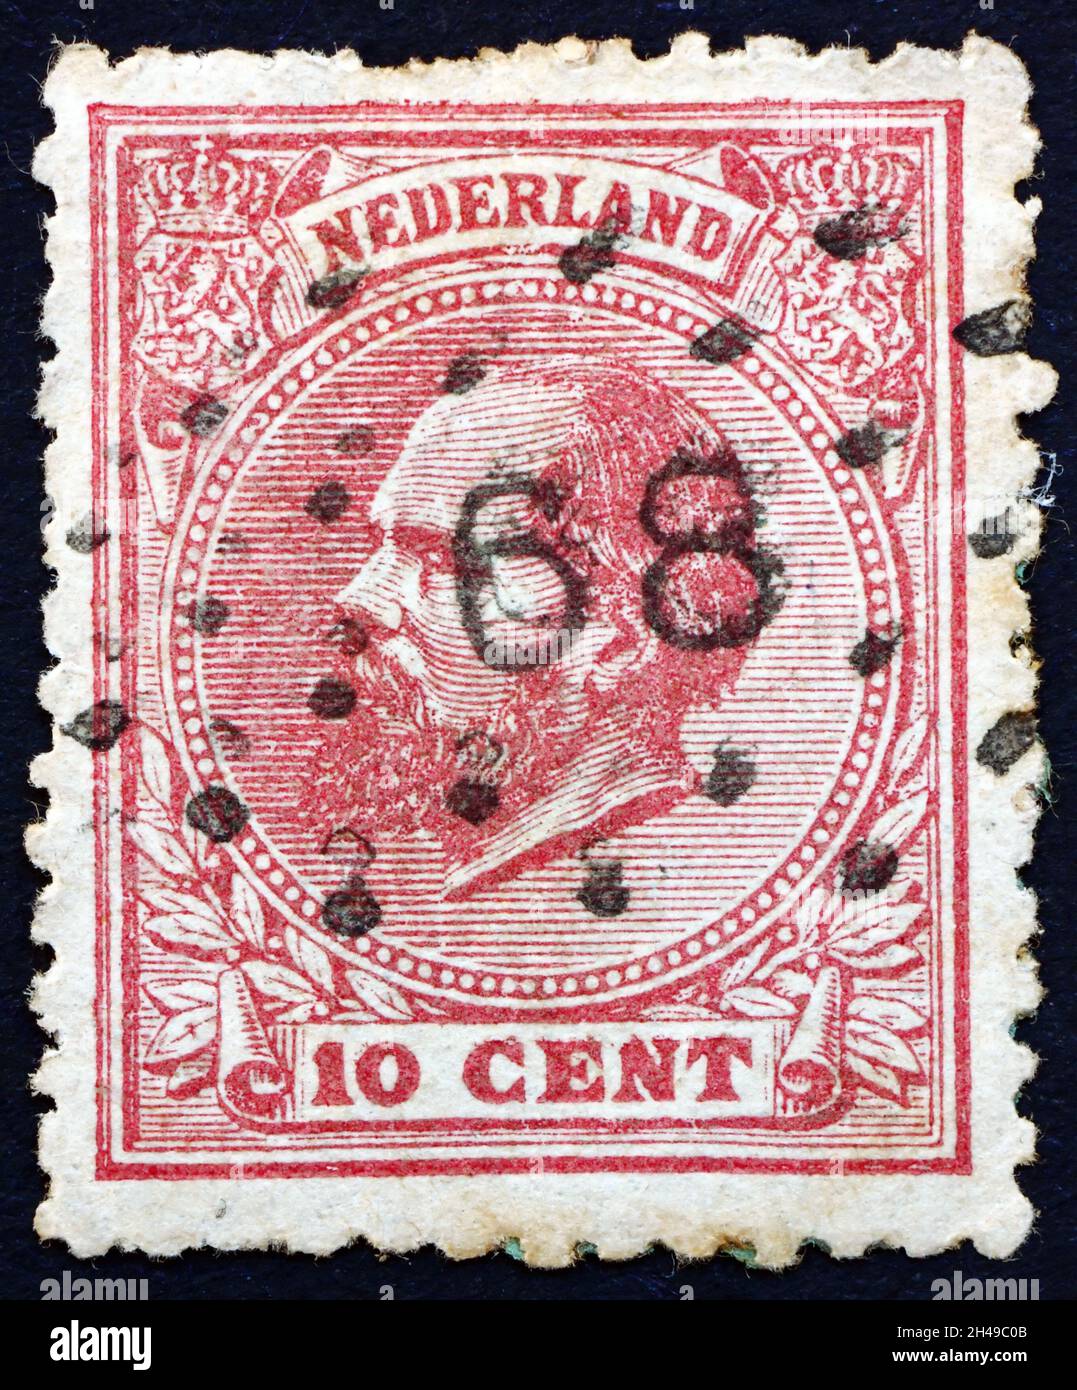 NIEDERLANDE - UM 1872: Eine in den Niederlanden gedruckte Briefmarke zeigt Wilhelm III., König der Niederlande, um 1872 Stockfoto